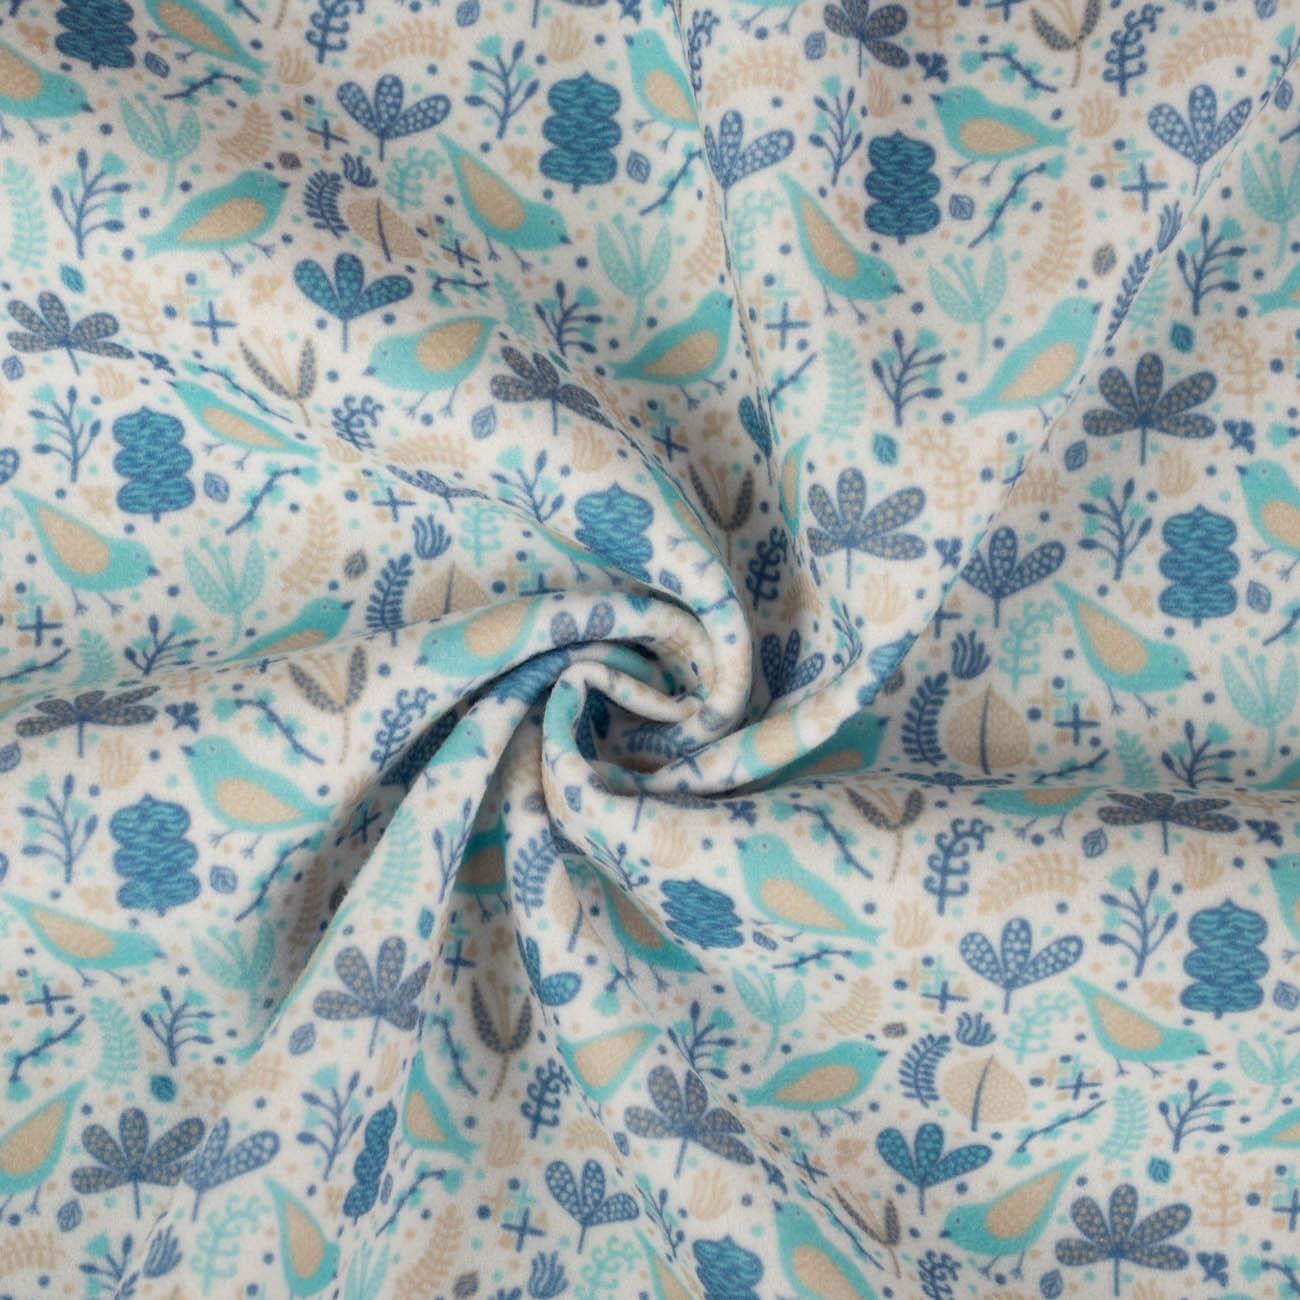 BLUE BIRDS - Duffle fleece with pattern